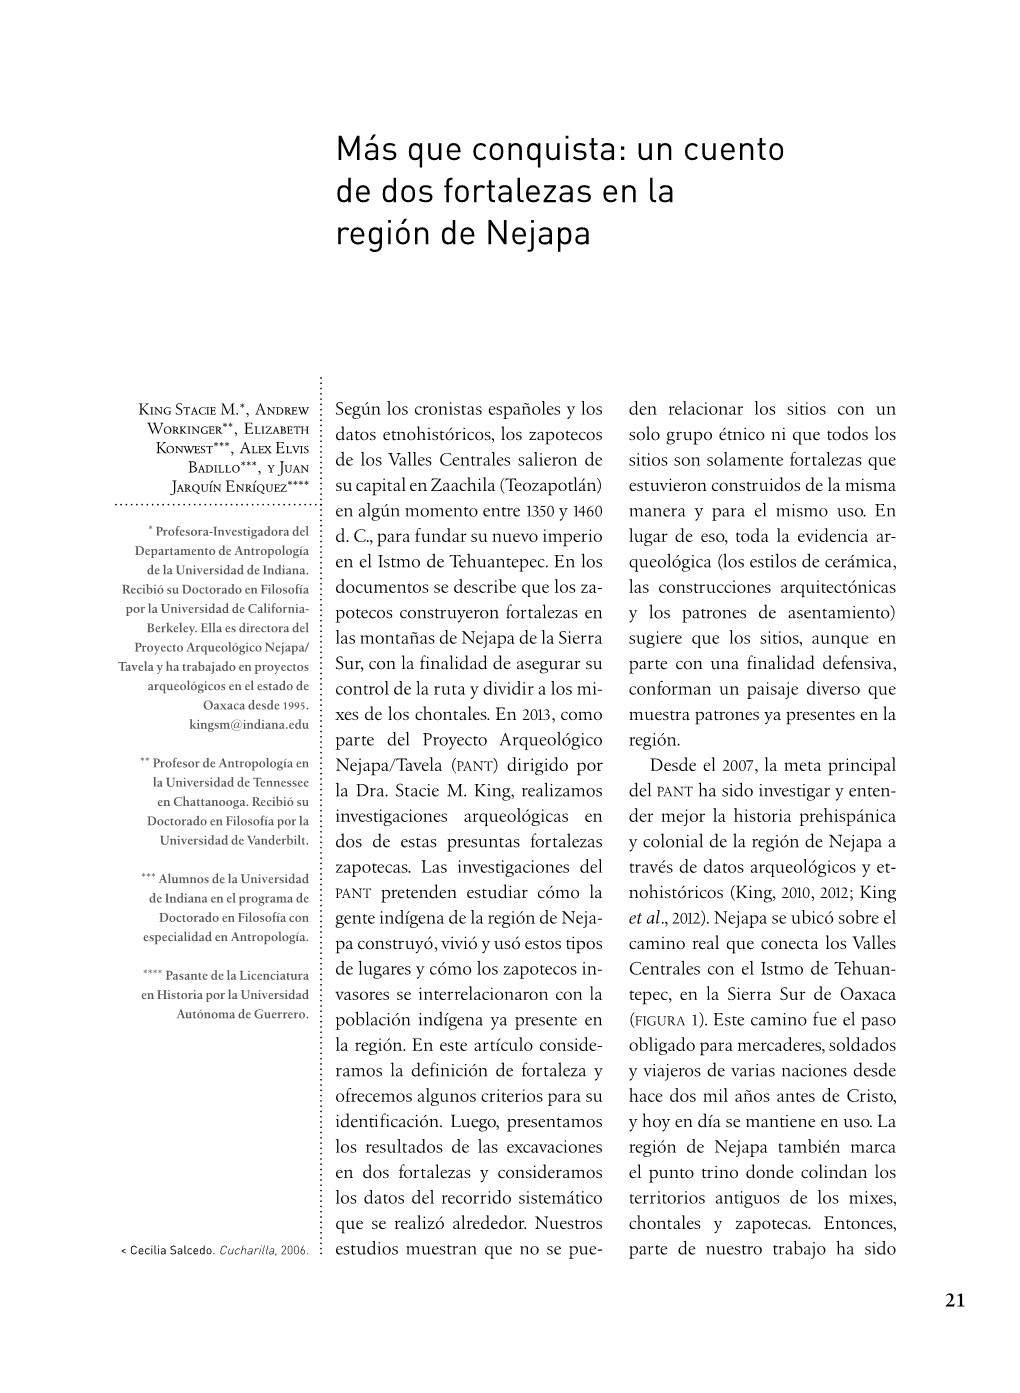 Más Que Conquista: Un Cuento De Dos Fortalezas En La Región De Nejapa